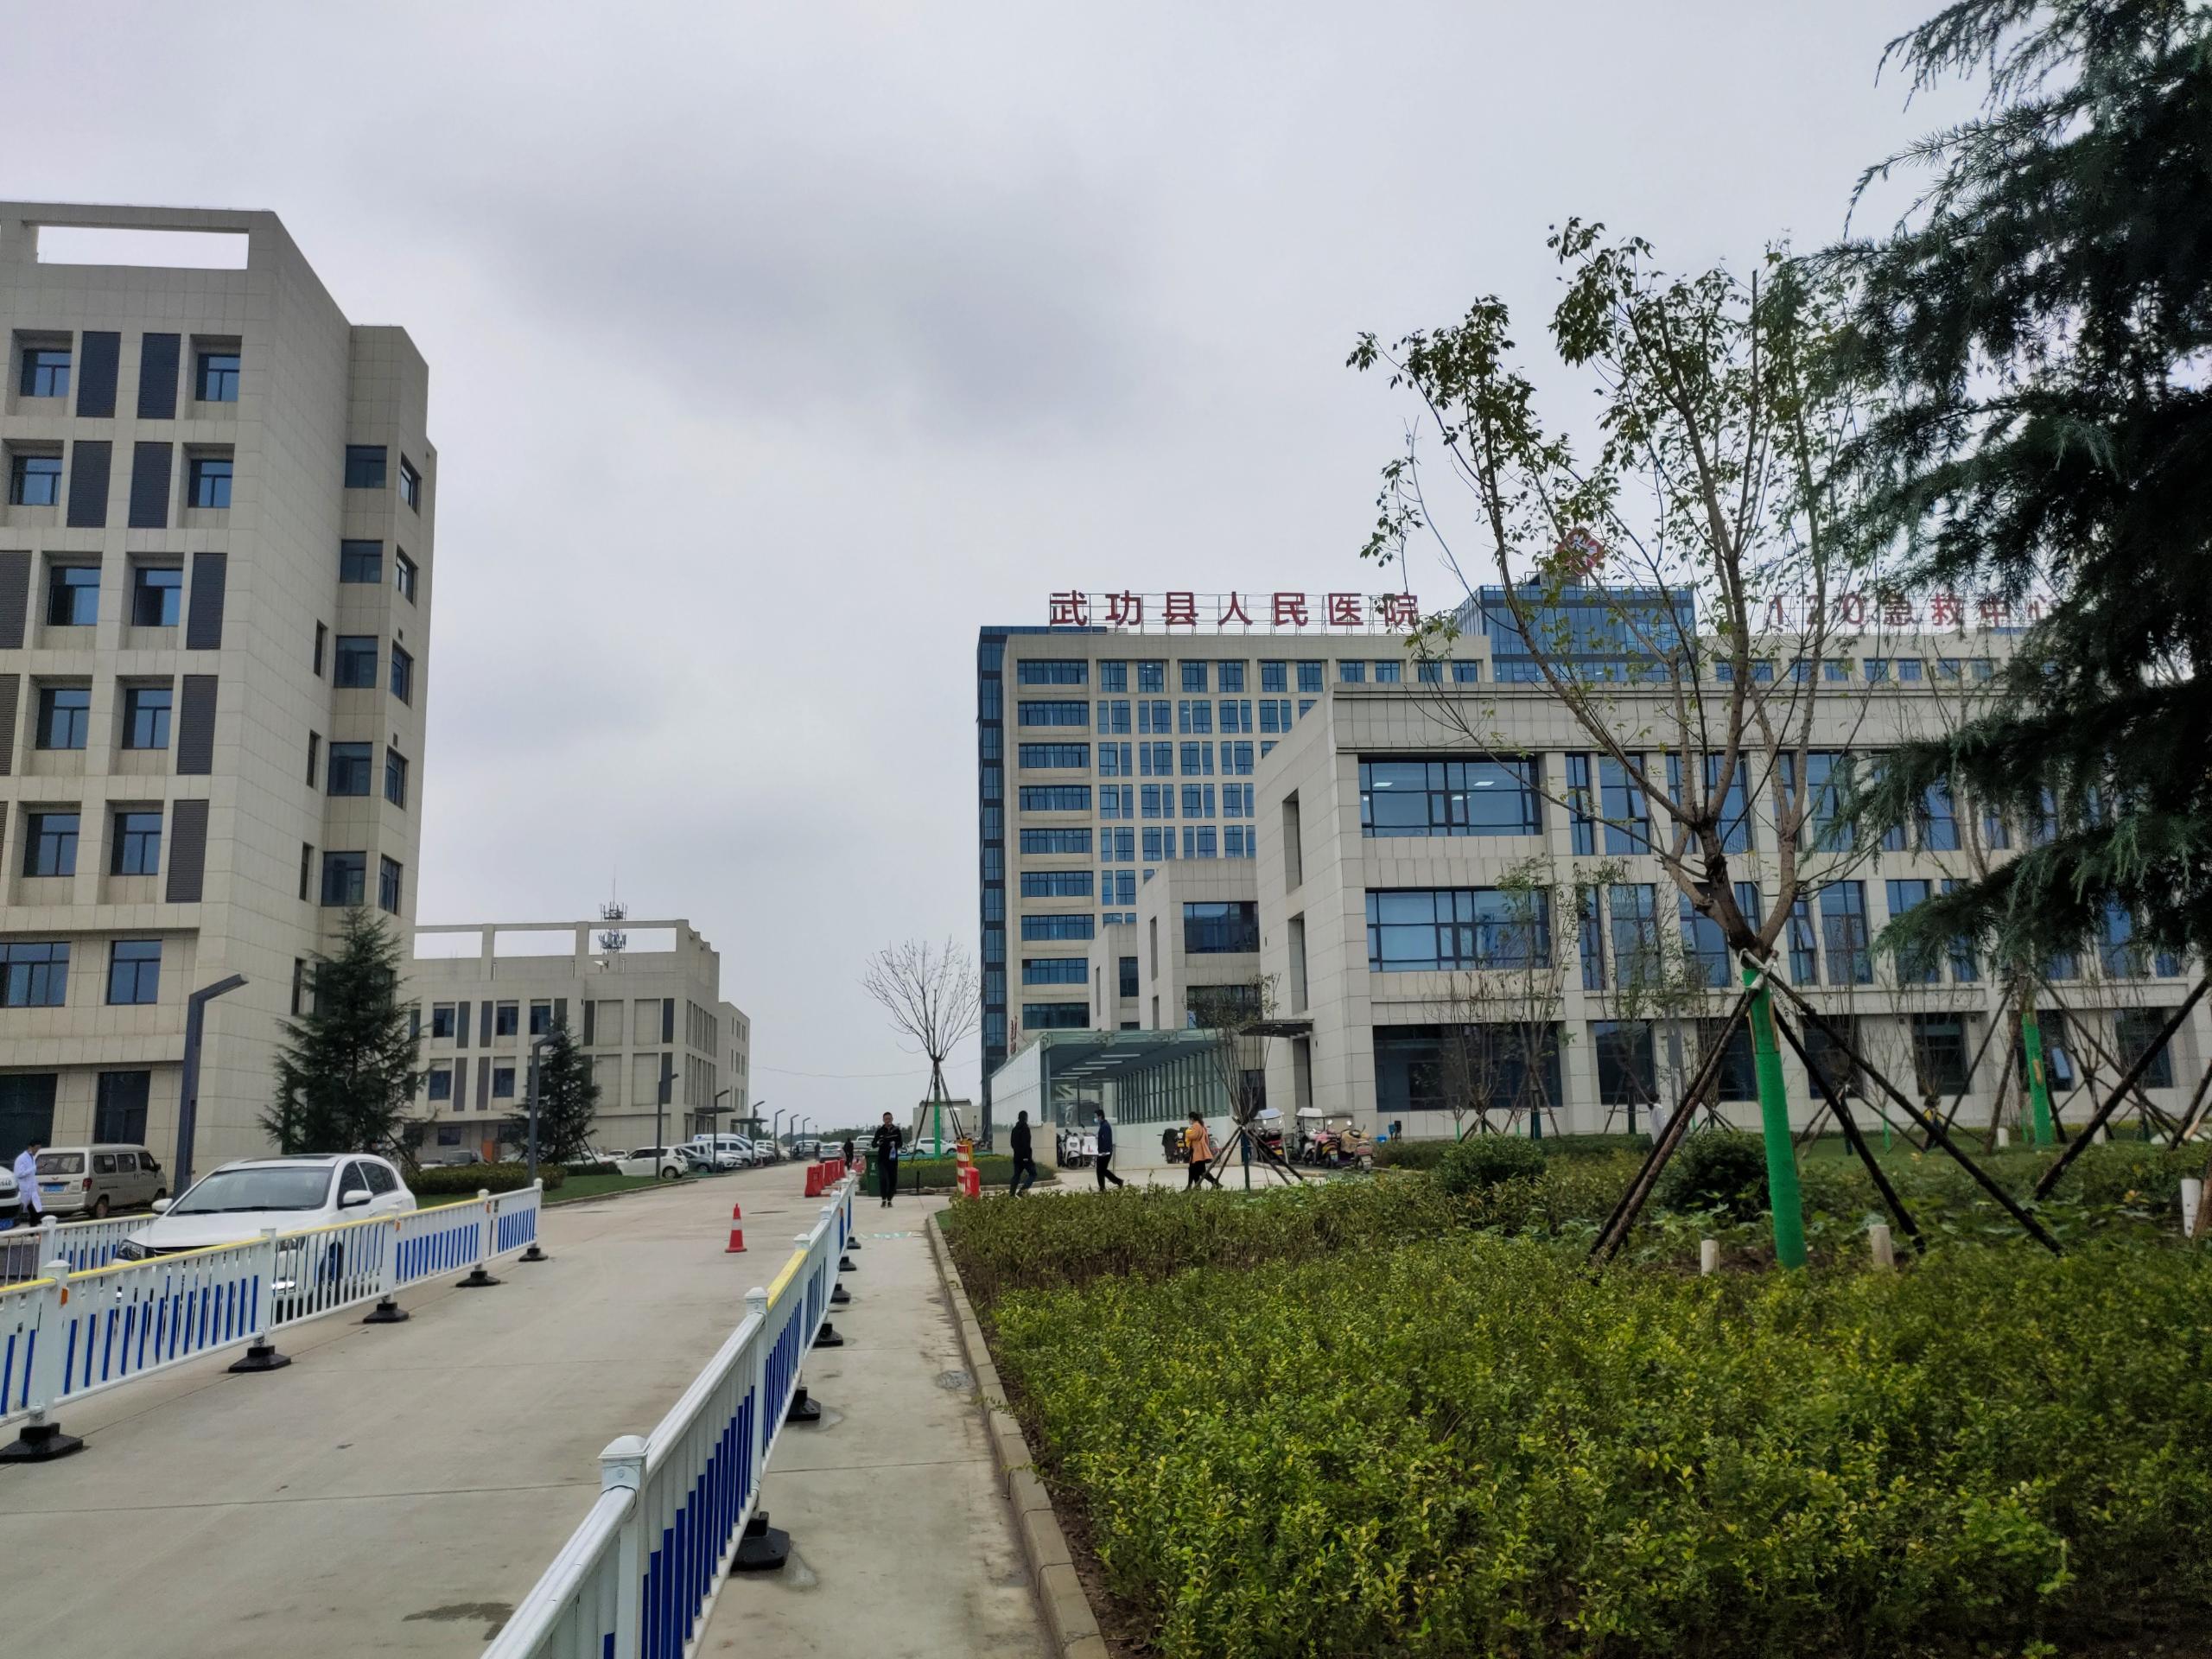 [十月装机]母乳检测仪设备成功在陕西武功县人民医院安装调试完成10.28